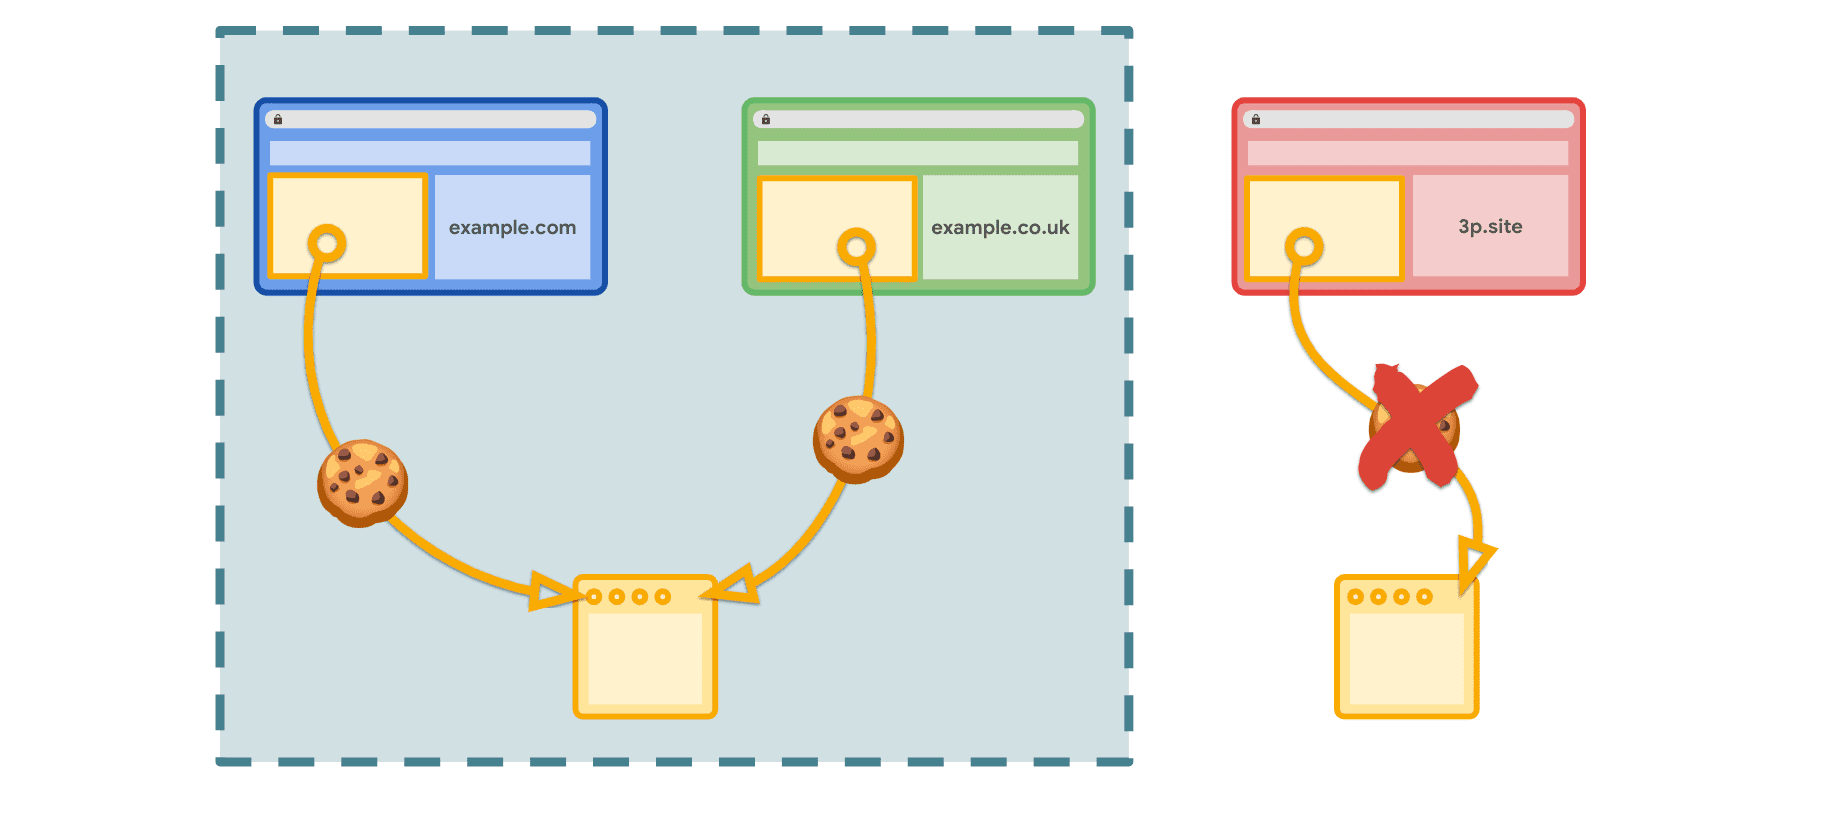 Os conjuntos de sites relacionados permitem o acesso a cookies no contexto dos sites declarados, mas não em outros sites de terceiros.